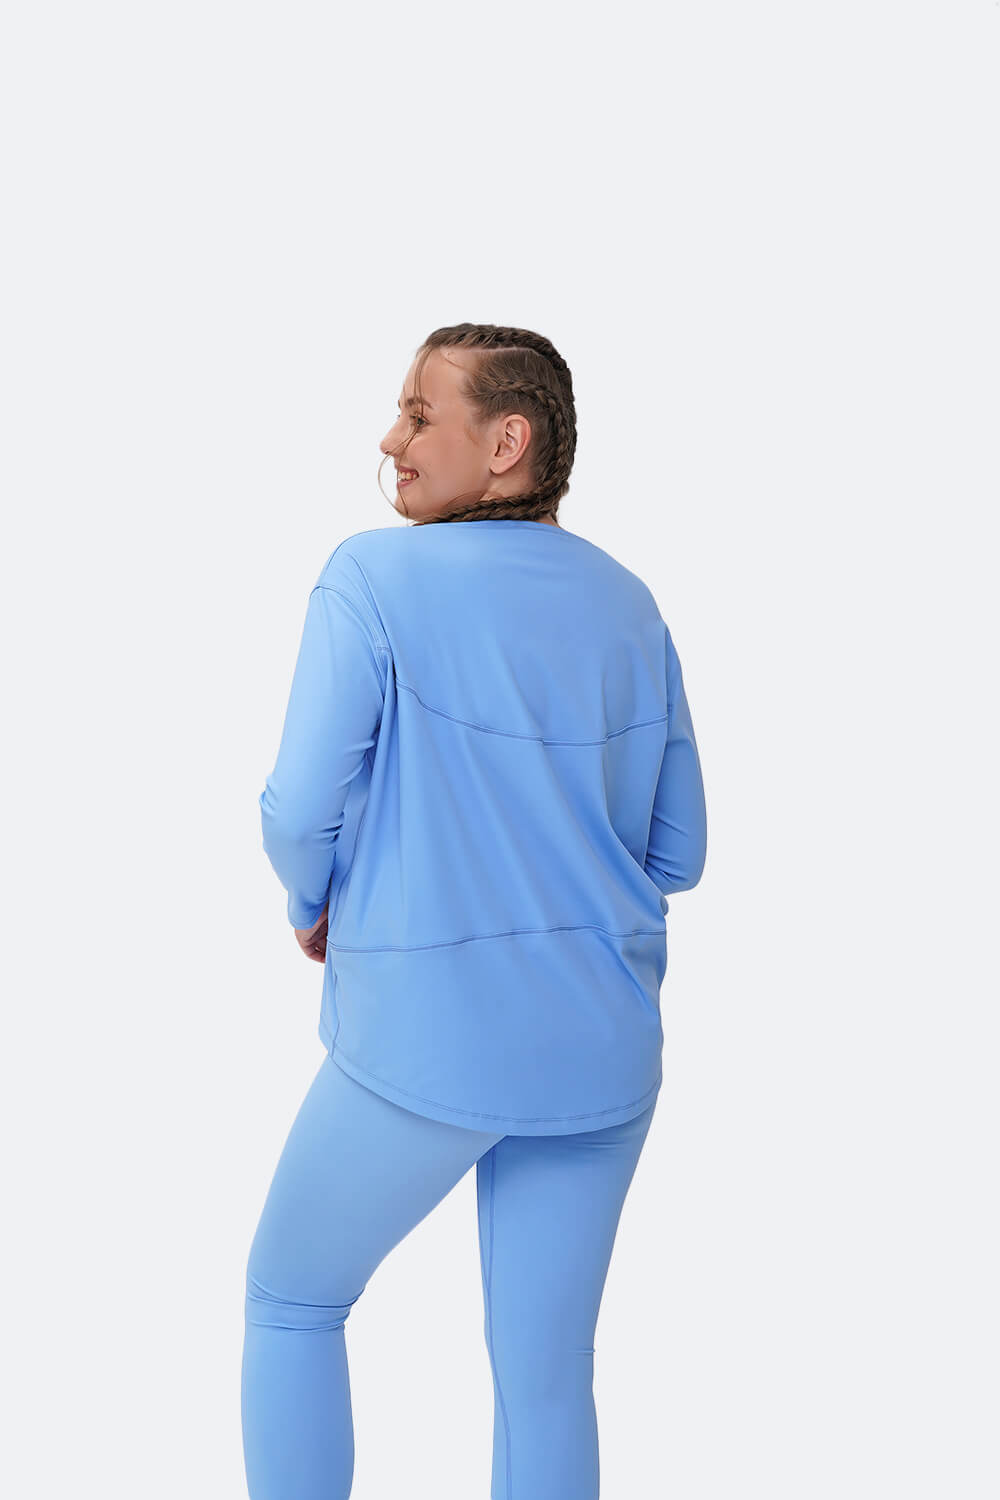 Conjunto esportivo com camiseta manga longa azul-celeste